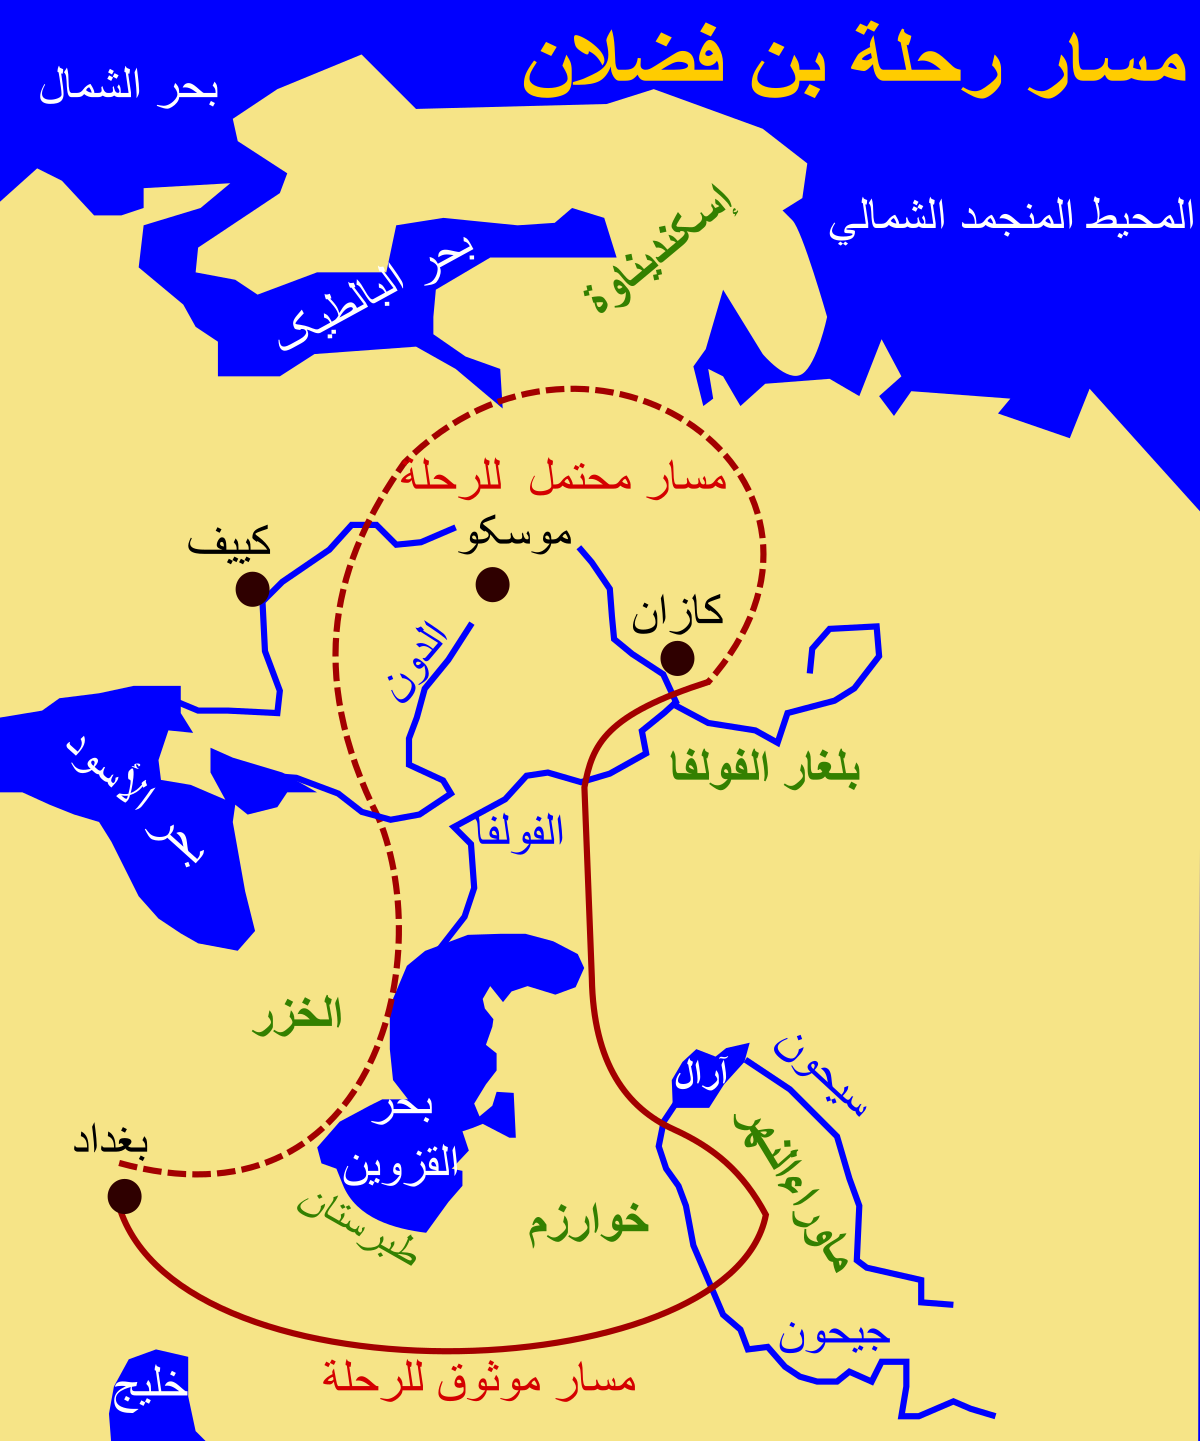 Dal deserto alle steppe nordiche: il viaggio di Ahmad ibn Fadlan